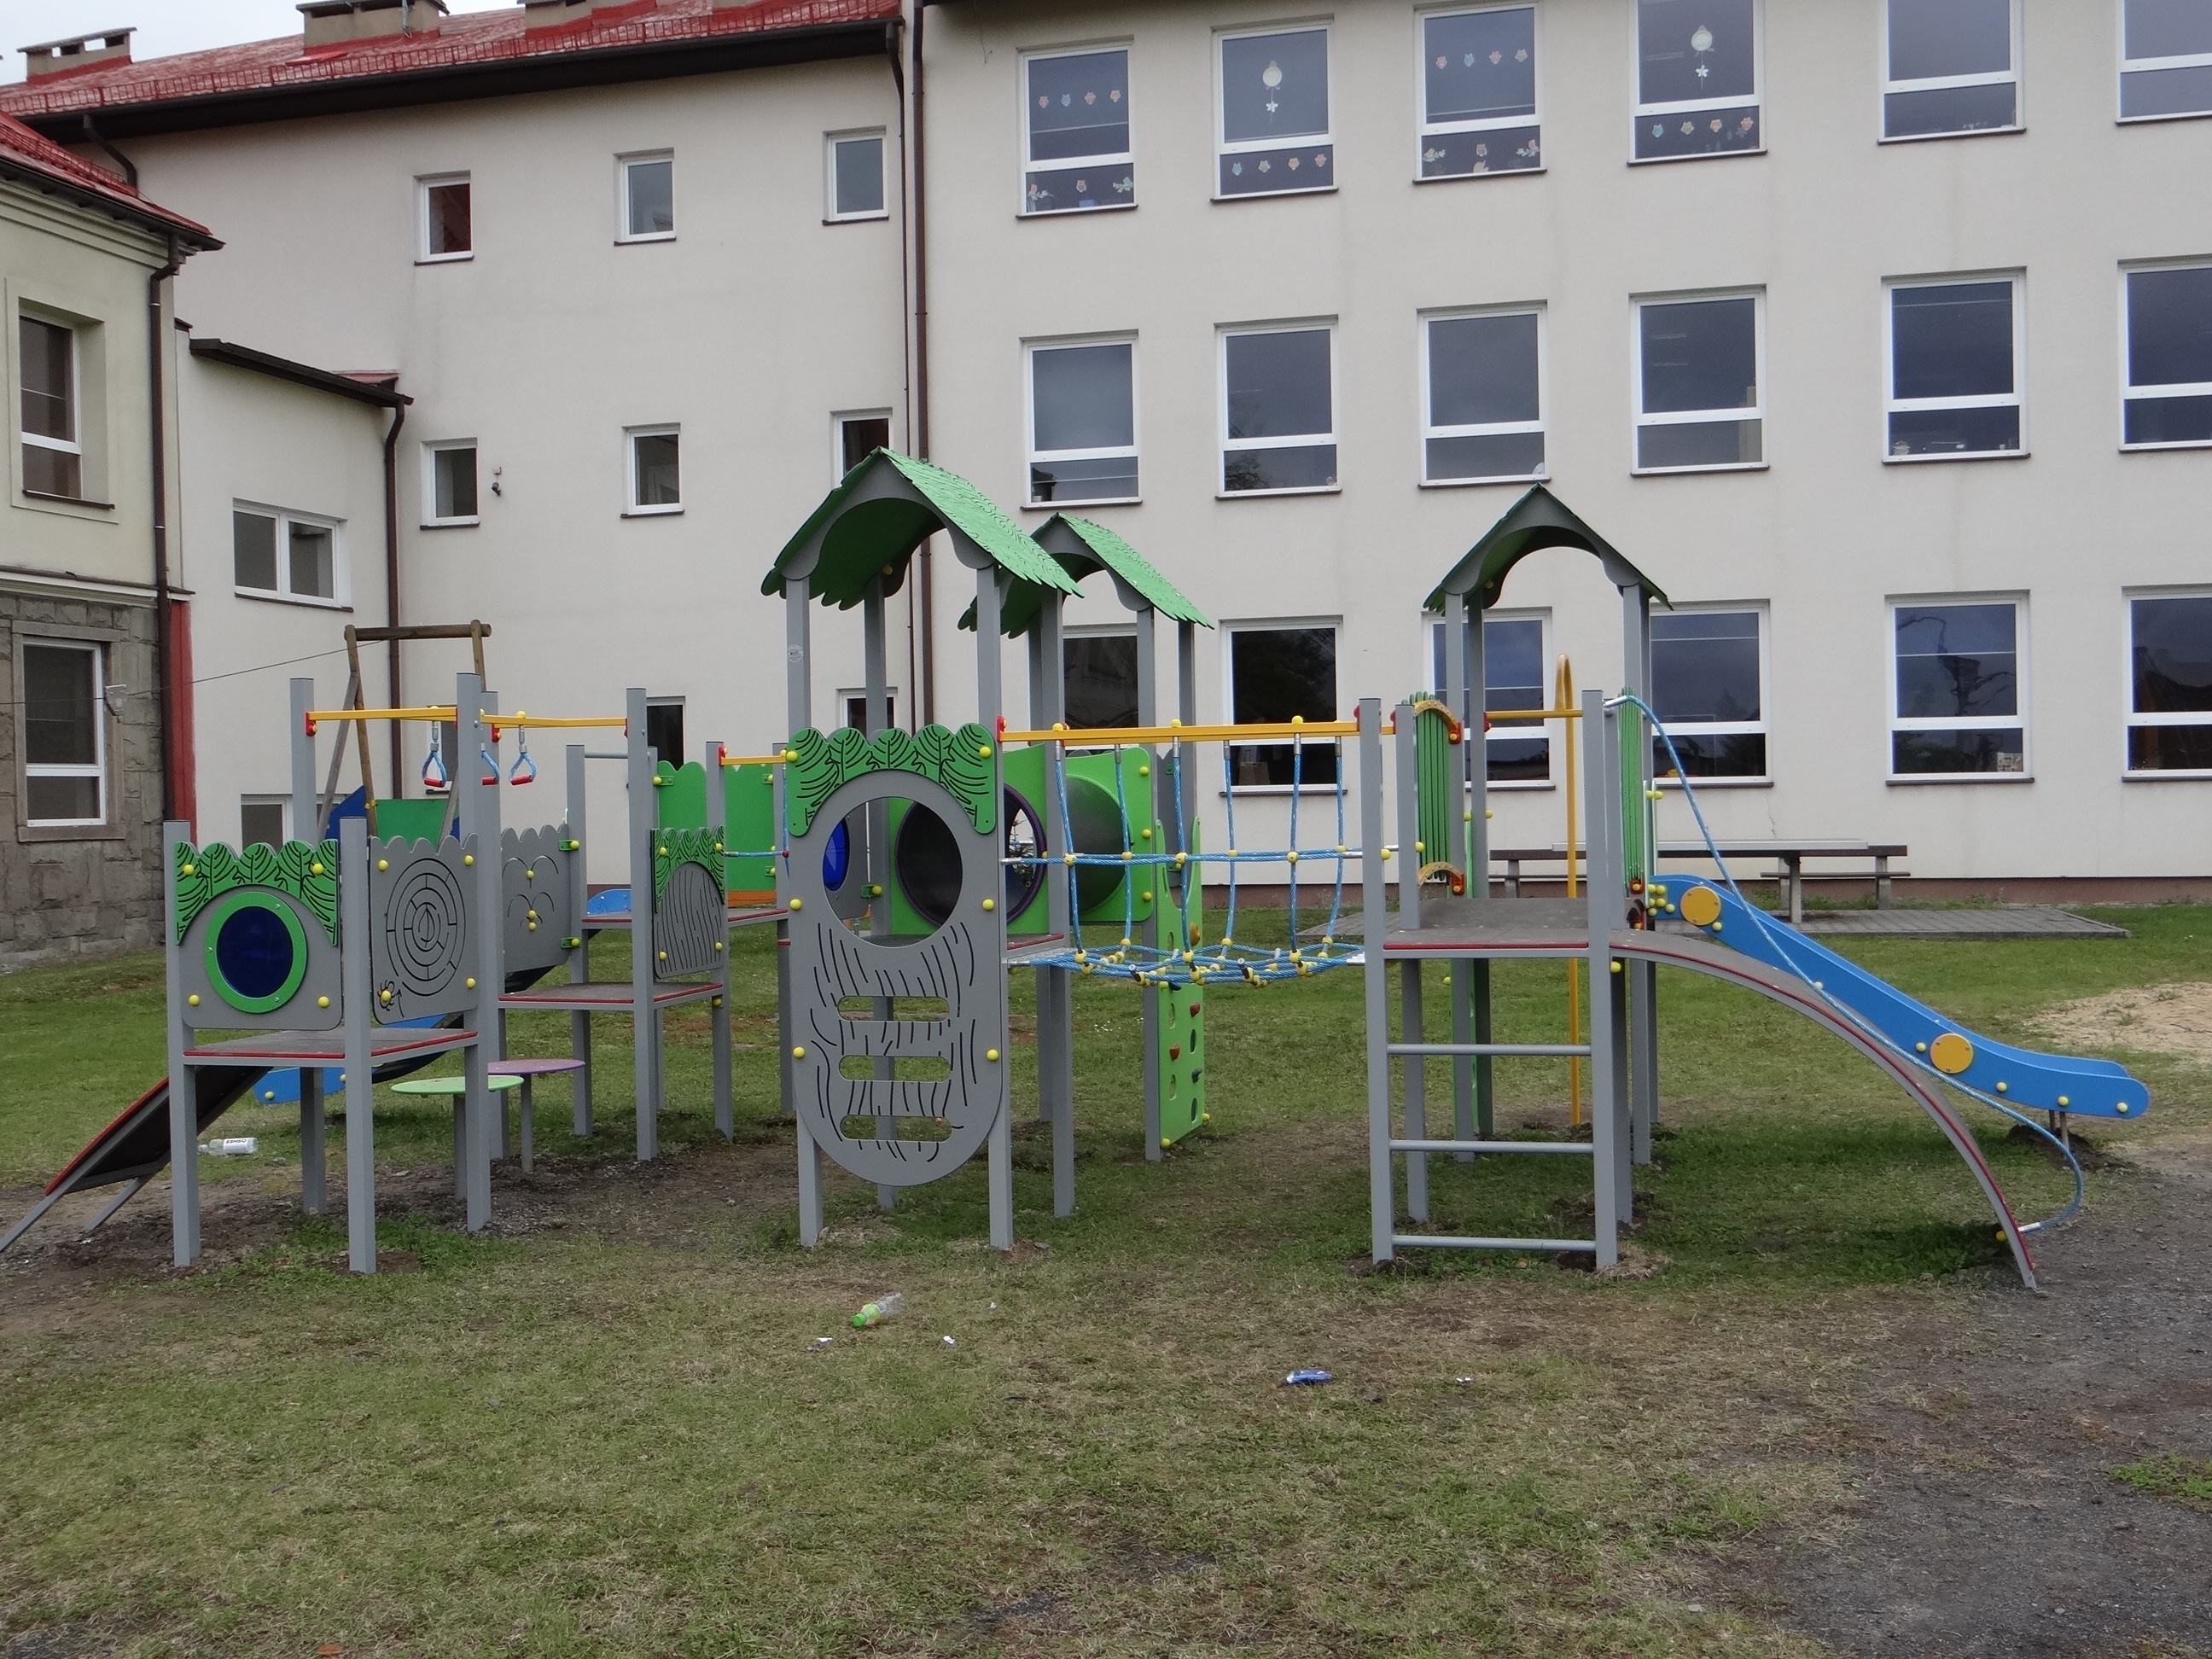 Ogólnodostępny plac zabaw przy Szkole Podstawowej w Pogwizdowie po modernizacji (1). Widoczna część urządzeń placu. Z tyłu budynek szkolny (skrzydło wschodnie i częściowo północne).